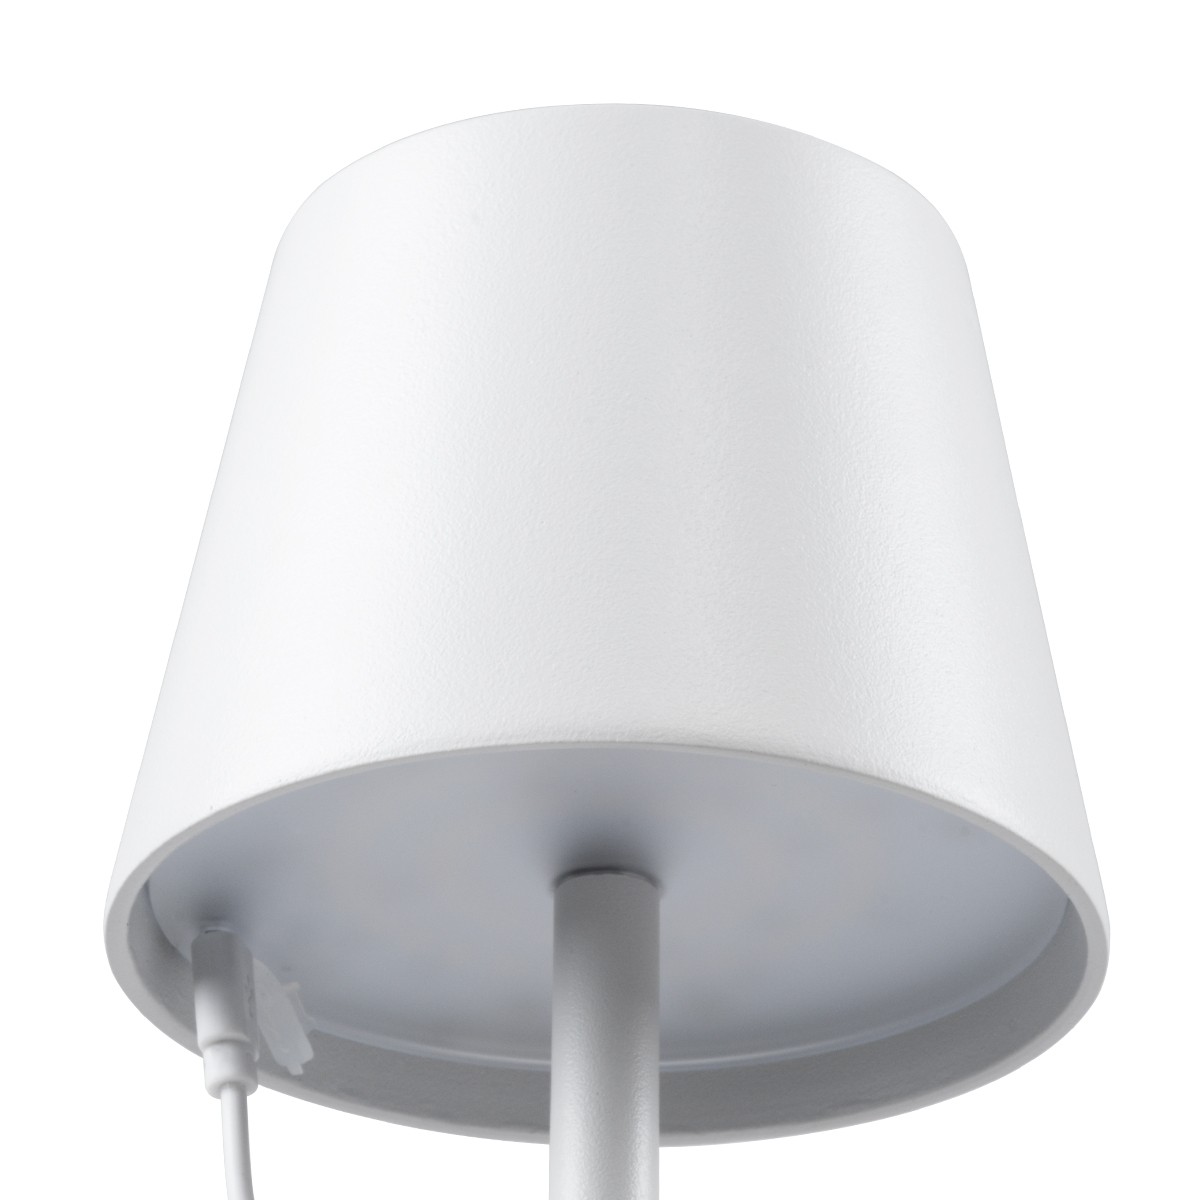 LED Επιτραπέζιο Φωτιστικό Λευκό 2.2W FIDEL Επαναφορτιζόμενο με Μπαταρία και Διακόπτη Αφής Dimmable - Φ12 x 38cm